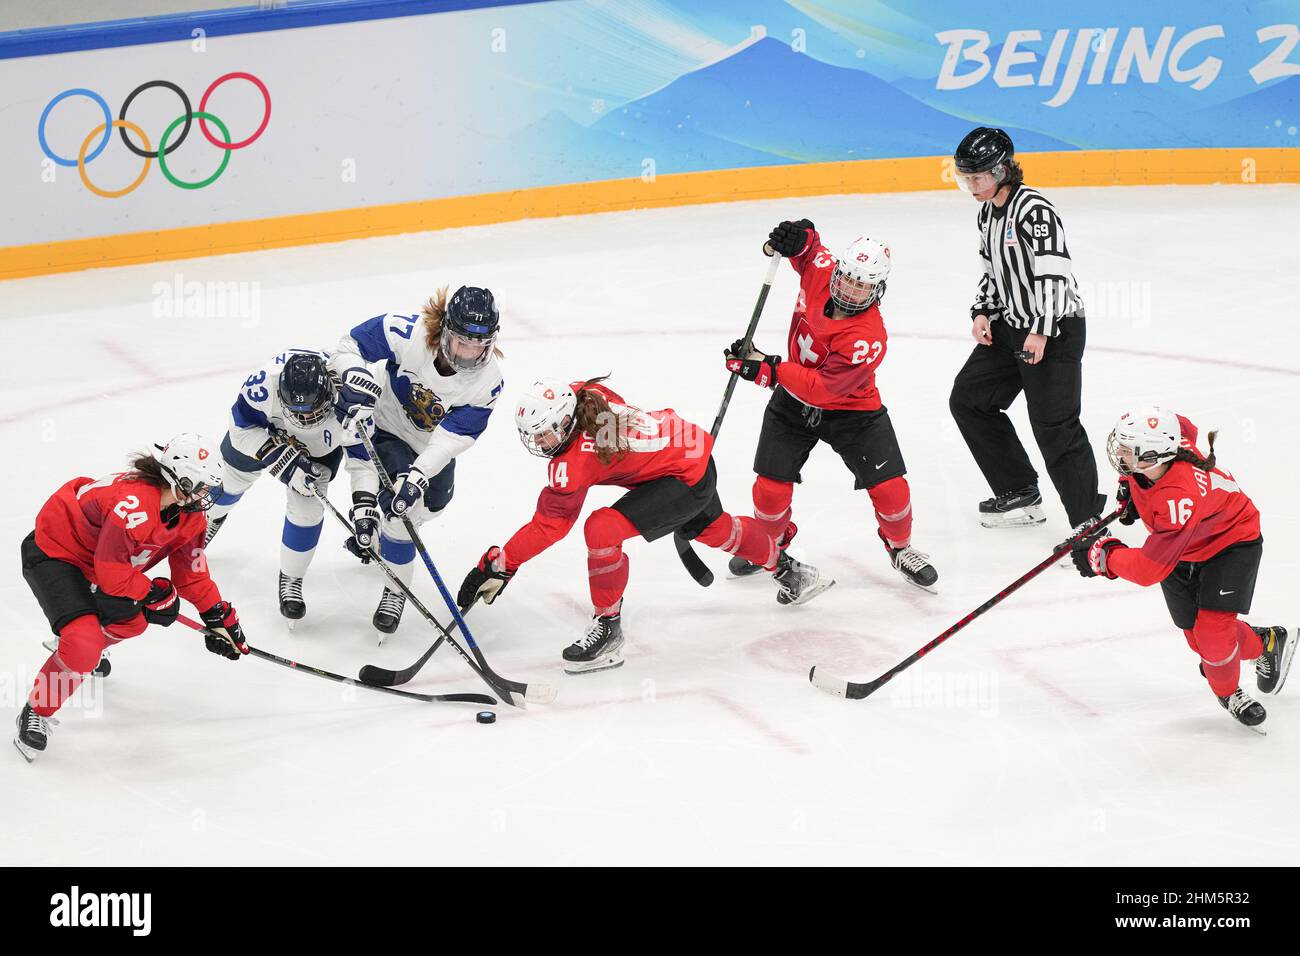 Peking, China. 7th. Februar 2022. Die Athleten kämpfen während des Eishockey-Frauenwettkampfes der Gruppe A zwischen der Schweiz und Finnland im National Indoor Stadium in Peking, der Hauptstadt Chinas, am 7. Februar 2022. Quelle: Du Yu/Xinhua/Alamy Live News Stockfoto